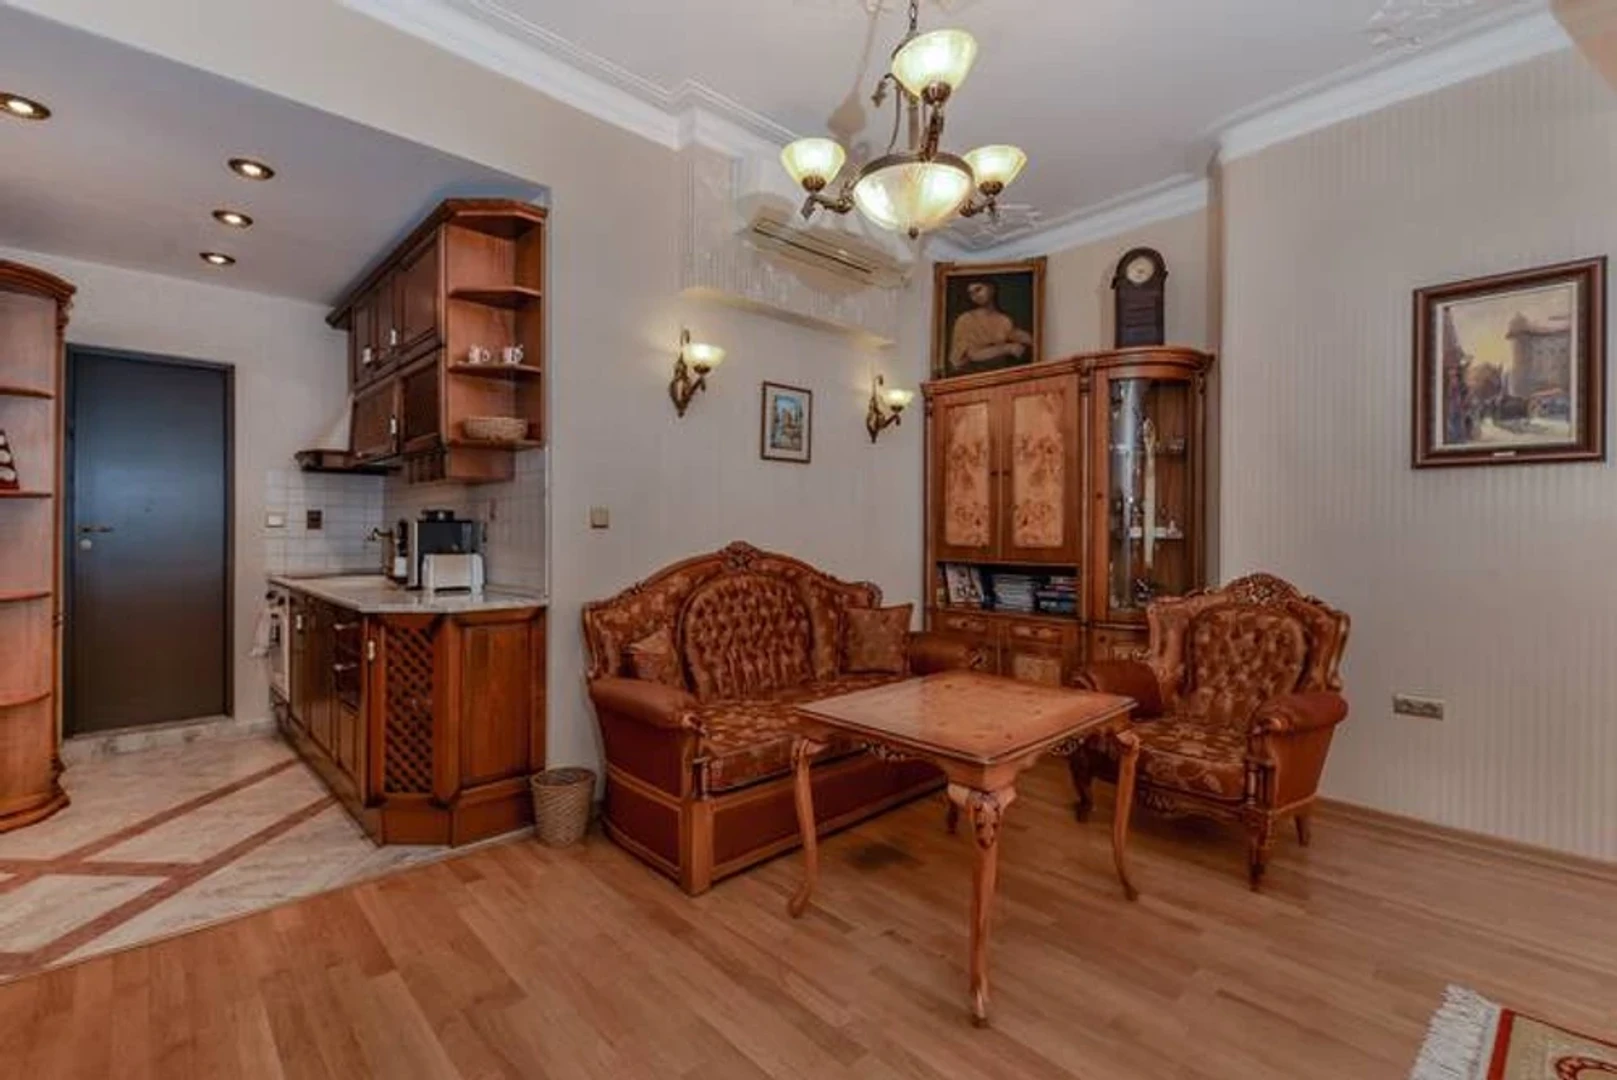 W pełni umeblowane mieszkanie w Sofia